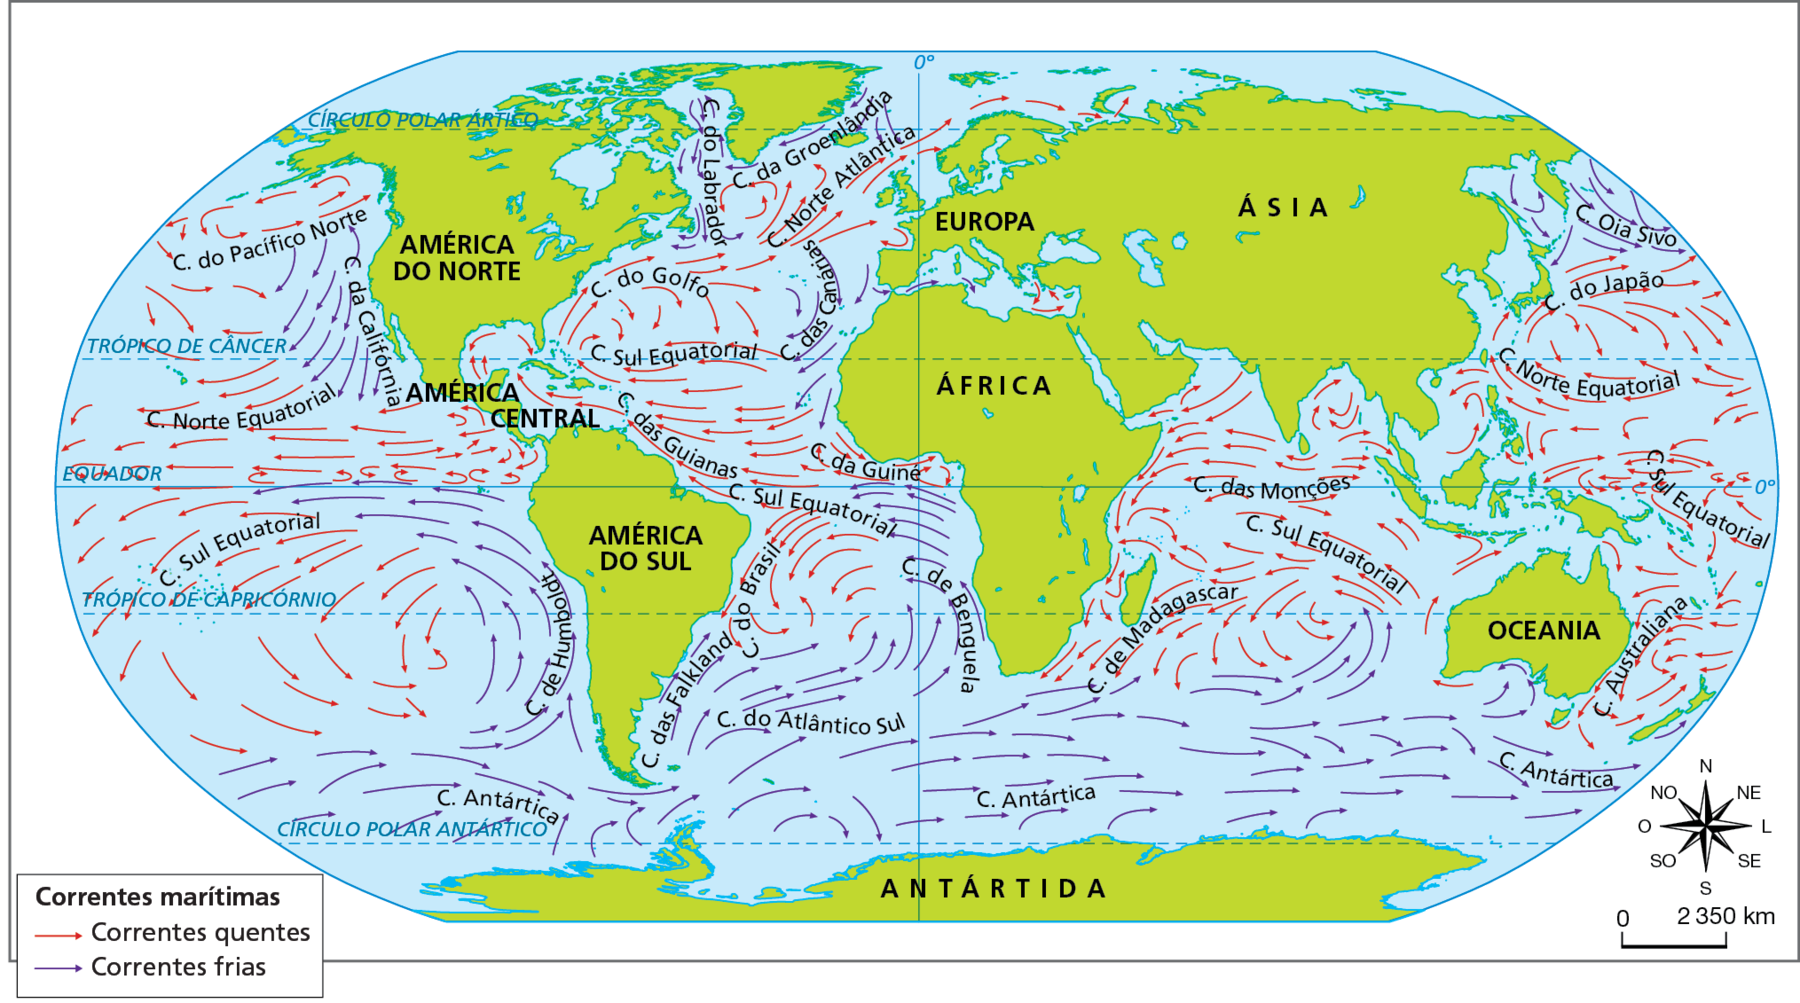 Mapa. Mundo: correntes marítimas. Planisfério com destaque para os continentes e setas vermelhas que representam correntes marítimas quentes e setas azuis que representam correntes marítimas frias. 
A oeste da América do Norte e Central, no Oceano Pacífico, entre o Círculo Polar Ártico e a linha do Equador, deslocam-se as correntes quentes do Pacífico Norte e a Norte Equatorial, e a corrente fria da Califórnia. A oeste da América do Sul, no Oceano Pacífico, entre a linha do Equador e o Círculo Polar Antártico, deslocam-se as correntes frias de Humboldt e Antártica e a corrente quente Sul Equatorial. 
No Oceano Atlântico, a leste da América do Norte e Central e a oeste da Europa e África, entre o Círculo Polar Ártico e a linha do Equador, deslocam-se as correntes quentes Norte Atlântica, do Golfo, Sul Equatorial, das Guianas e da Guiné, e as correntes frias do Labrador, da Groenlândia e das Canárias. 
No Oceano Atlântico, a leste da América do Sul e a leste da África, entre a linha do Equador e o Círculo Polar Antártico, deslocam-se as correntes frias Antártida, das Falkland, do Atlântico Sul e de Benguela e as correntes quentes do Brasil e Sul Equatorial.
No Oceano Índico, a leste da África, ao sul da Ásia e a oeste da Oceania, entre o Trópico de Câncer e o Círculo Polar Antártico, deslocam-se as correntes quentes das Monções, Sul Equatorial e de Madagascar e a corrente fria Antártica. No Oceano Pacífico, a leste da Ásia, entre o Círculo Polar Ártico e a linha do Equador, deslocam-se as correntes quentes do Japão, Norte Equatorial, Sul Equatorial e a corrente fria Oia Sivo. No Oceano Pacífico, a leste da Oceania, entre a linha do Equador e o Círculo Polar Antártico, deslocam-se as correntes quentes Sul Equatorial e Australiana e a corrente fria Antártica, que também se desloca ao norte de toda a Antártida. 
Abaixo, rosa dos ventos e escala de 0 a 2.350 quilômetros.